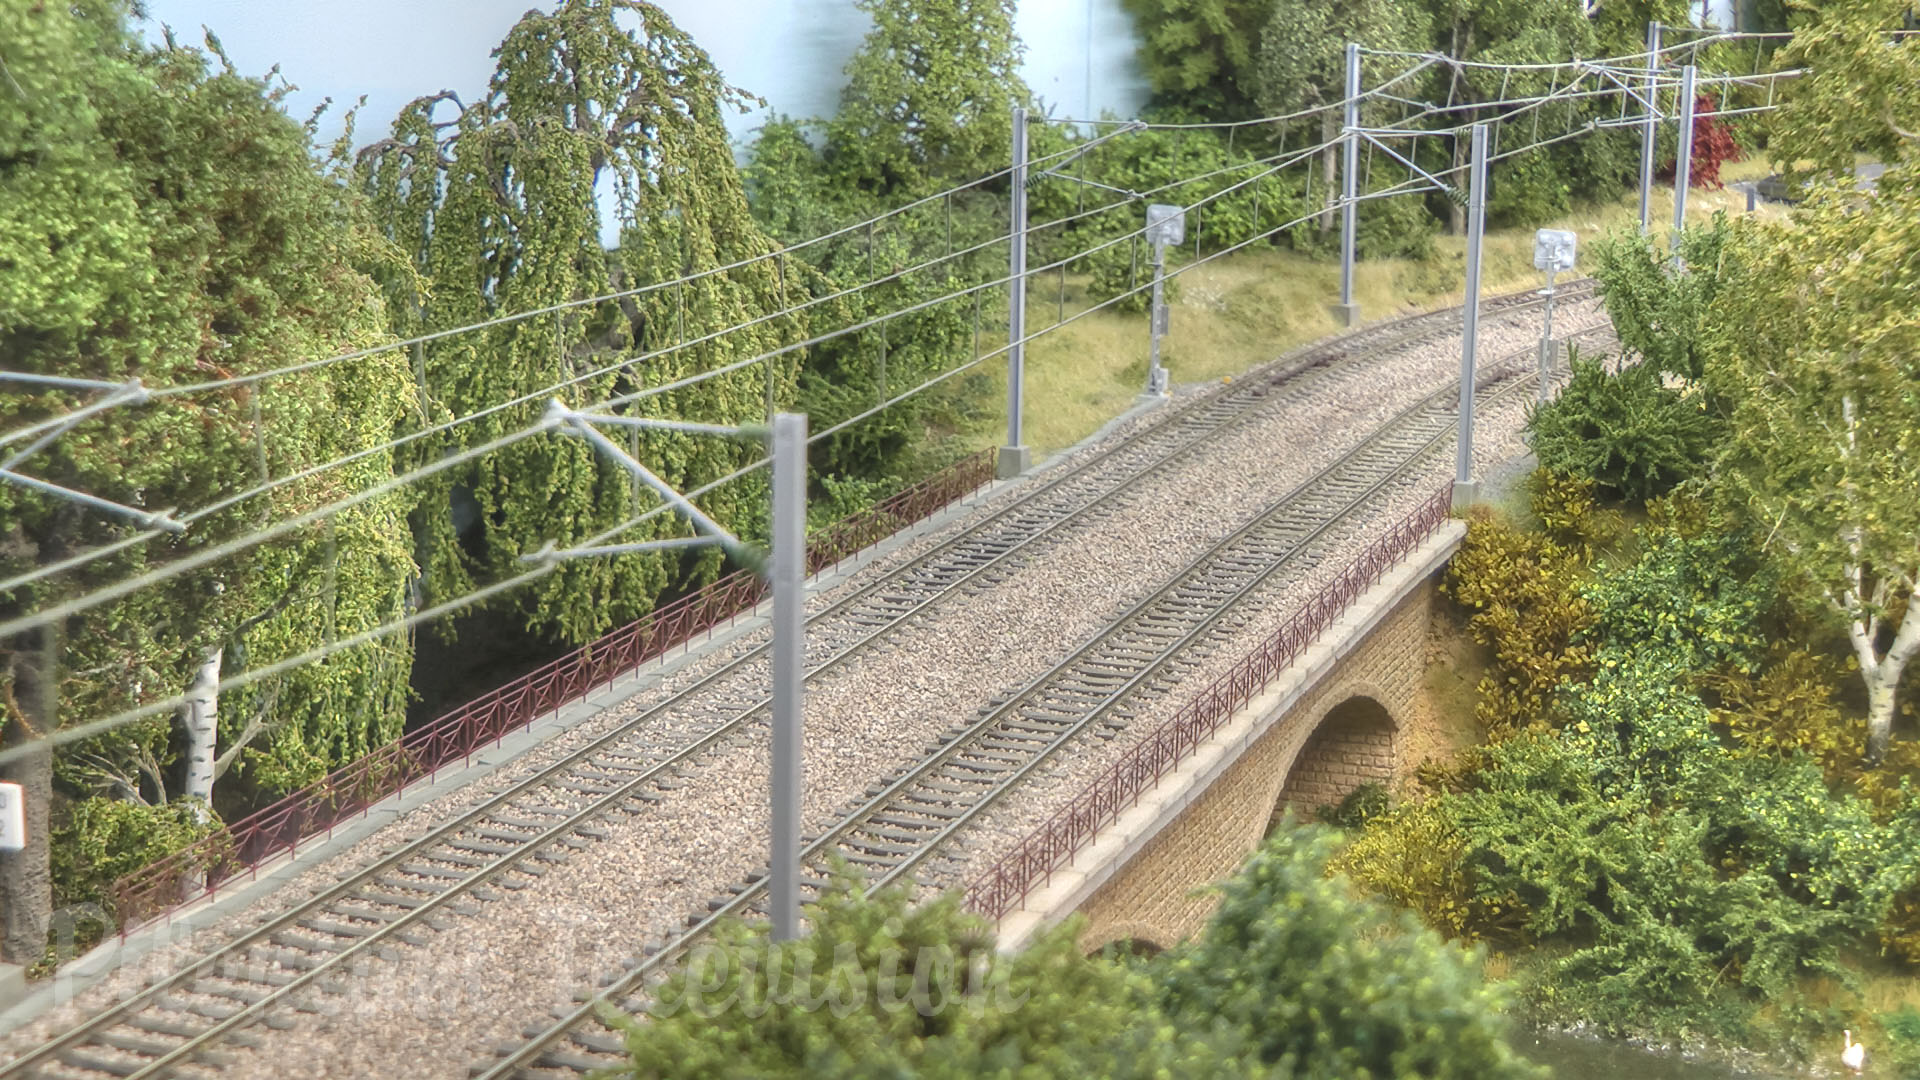 Magnifique maquette ferroviaire à l’échelle HO avec des trains miniatures luxembourgeois